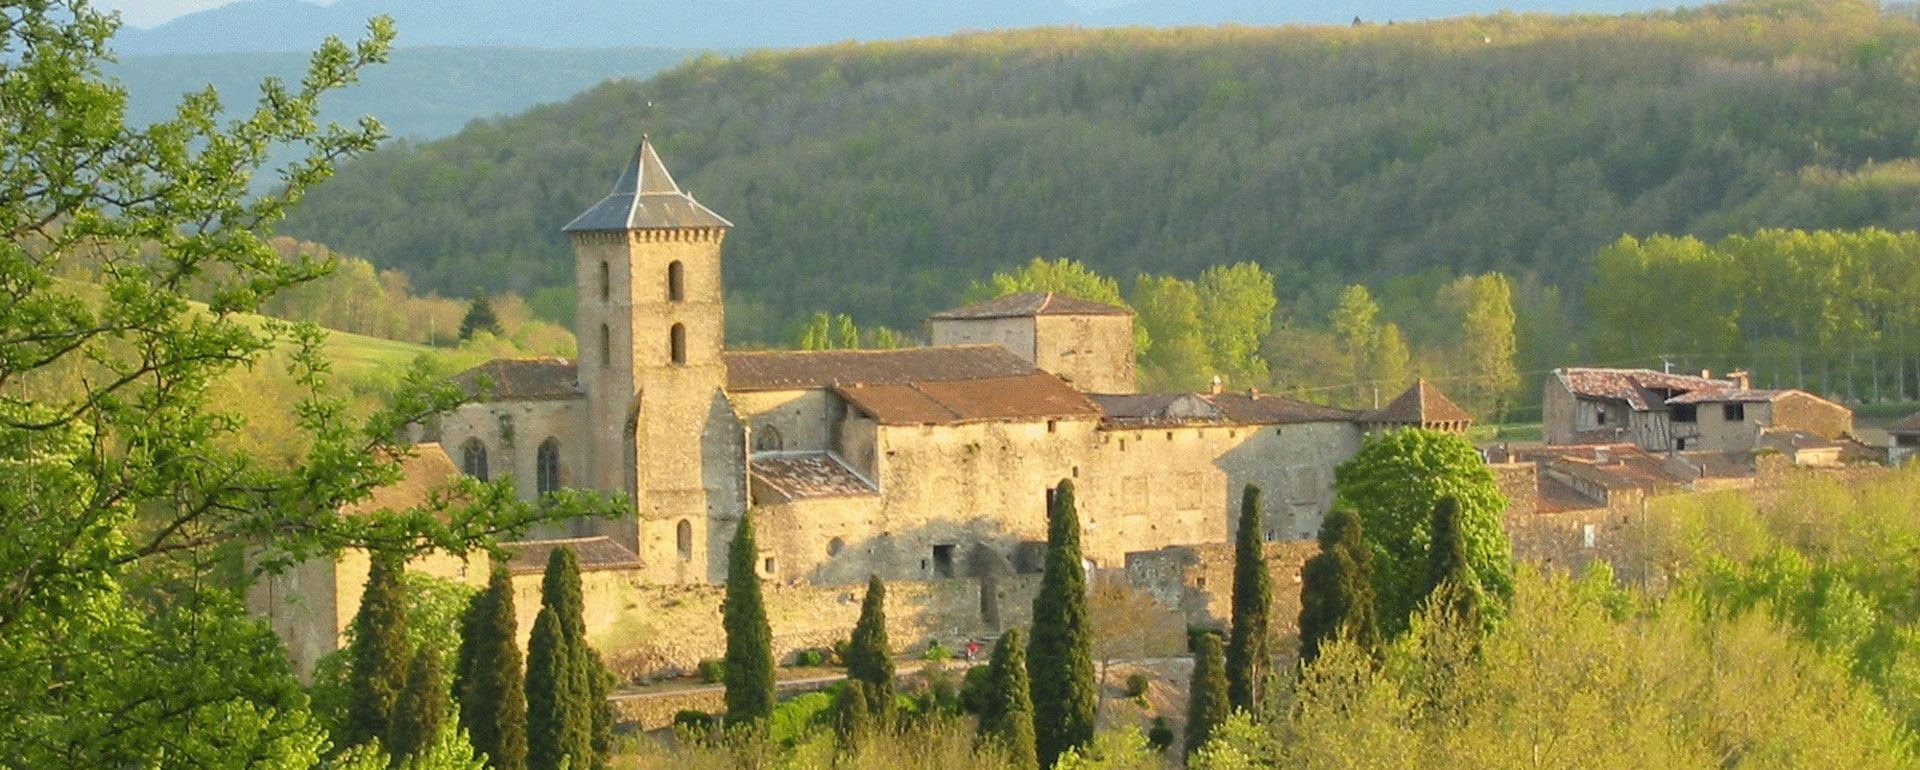 Camon, Pyrénées Cathares